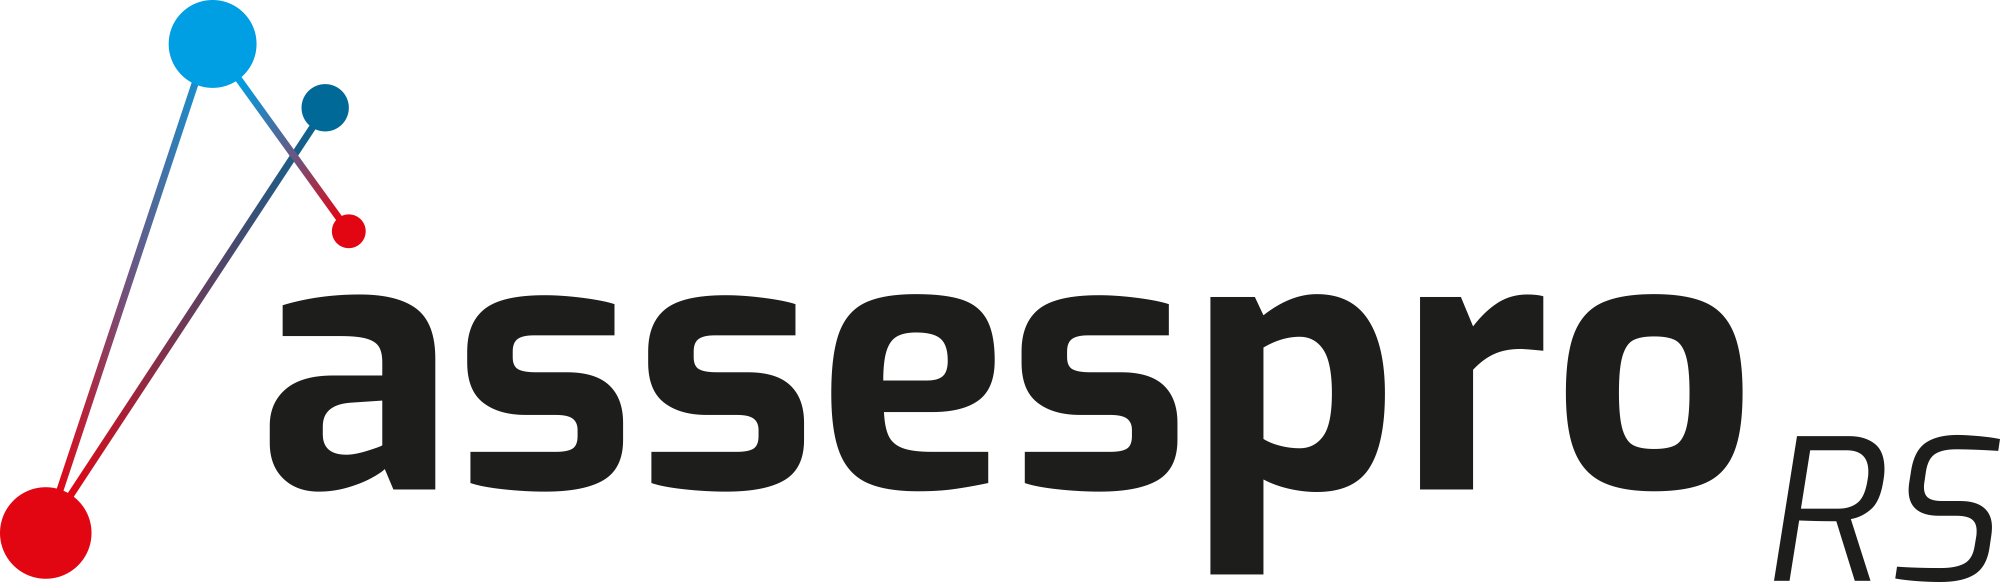 ASSESPRO-RS